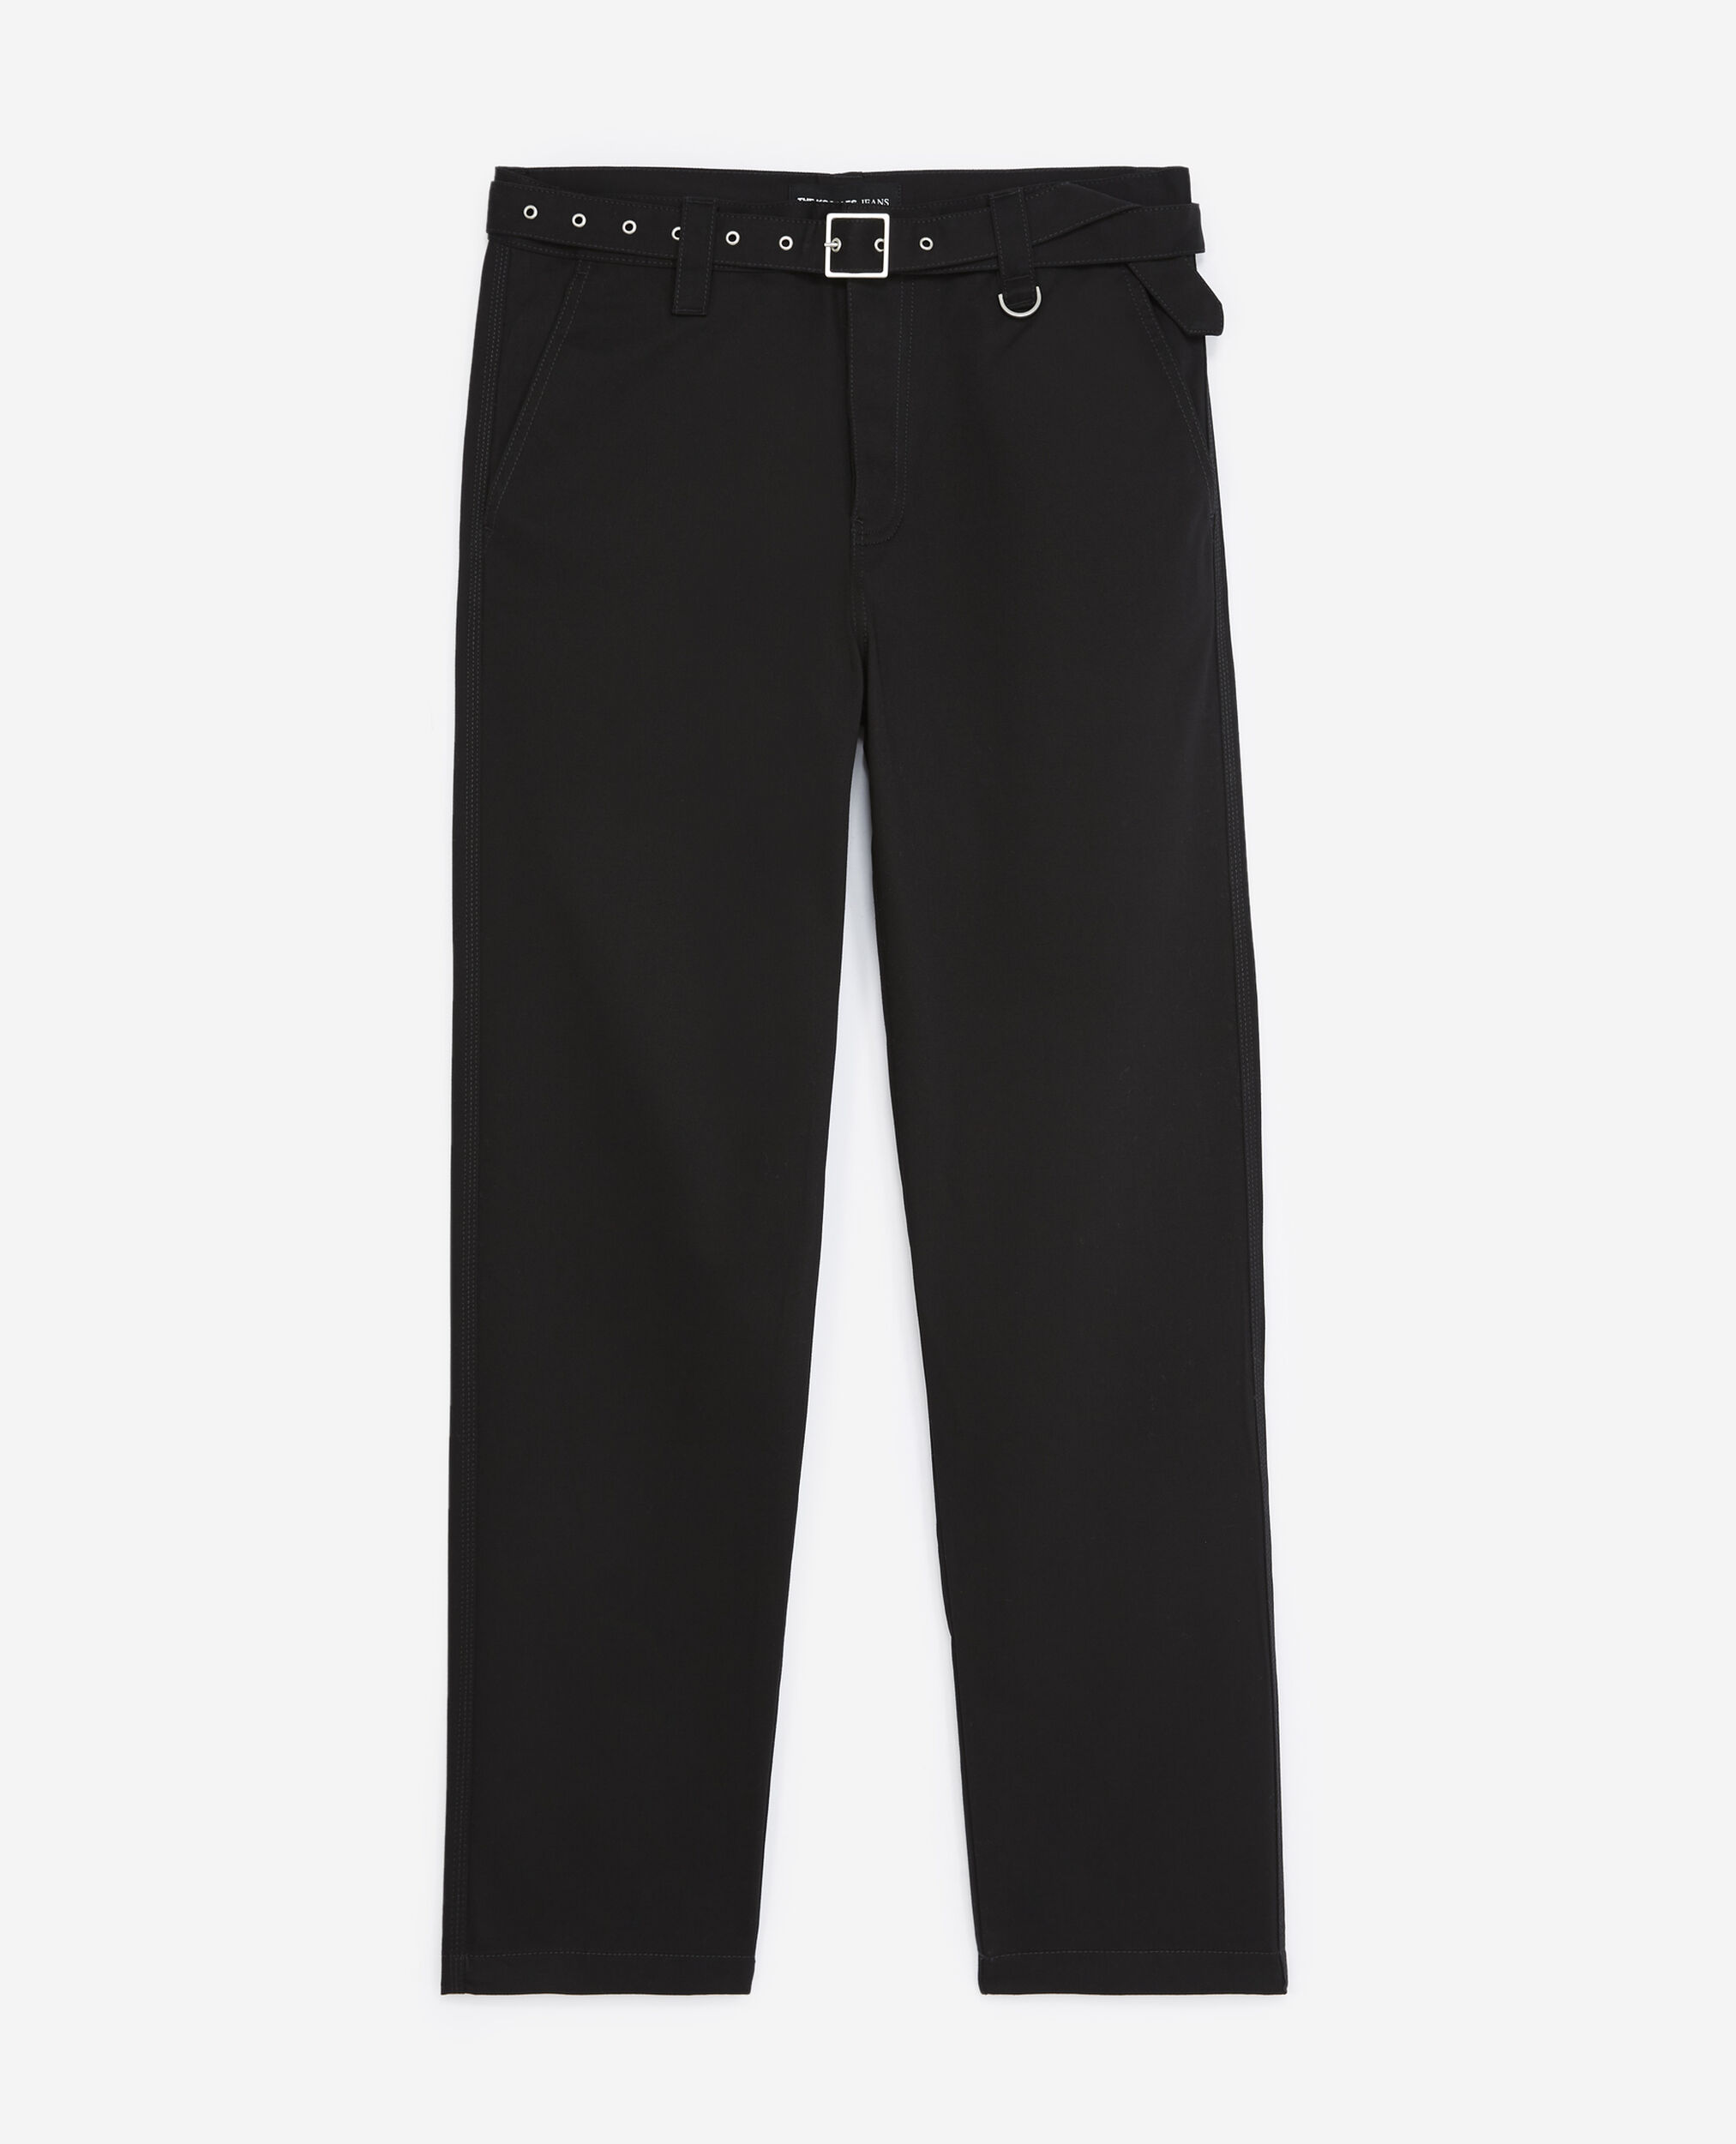 Pantalón negro recto cinturón integrado, BLACK, hi-res image number null